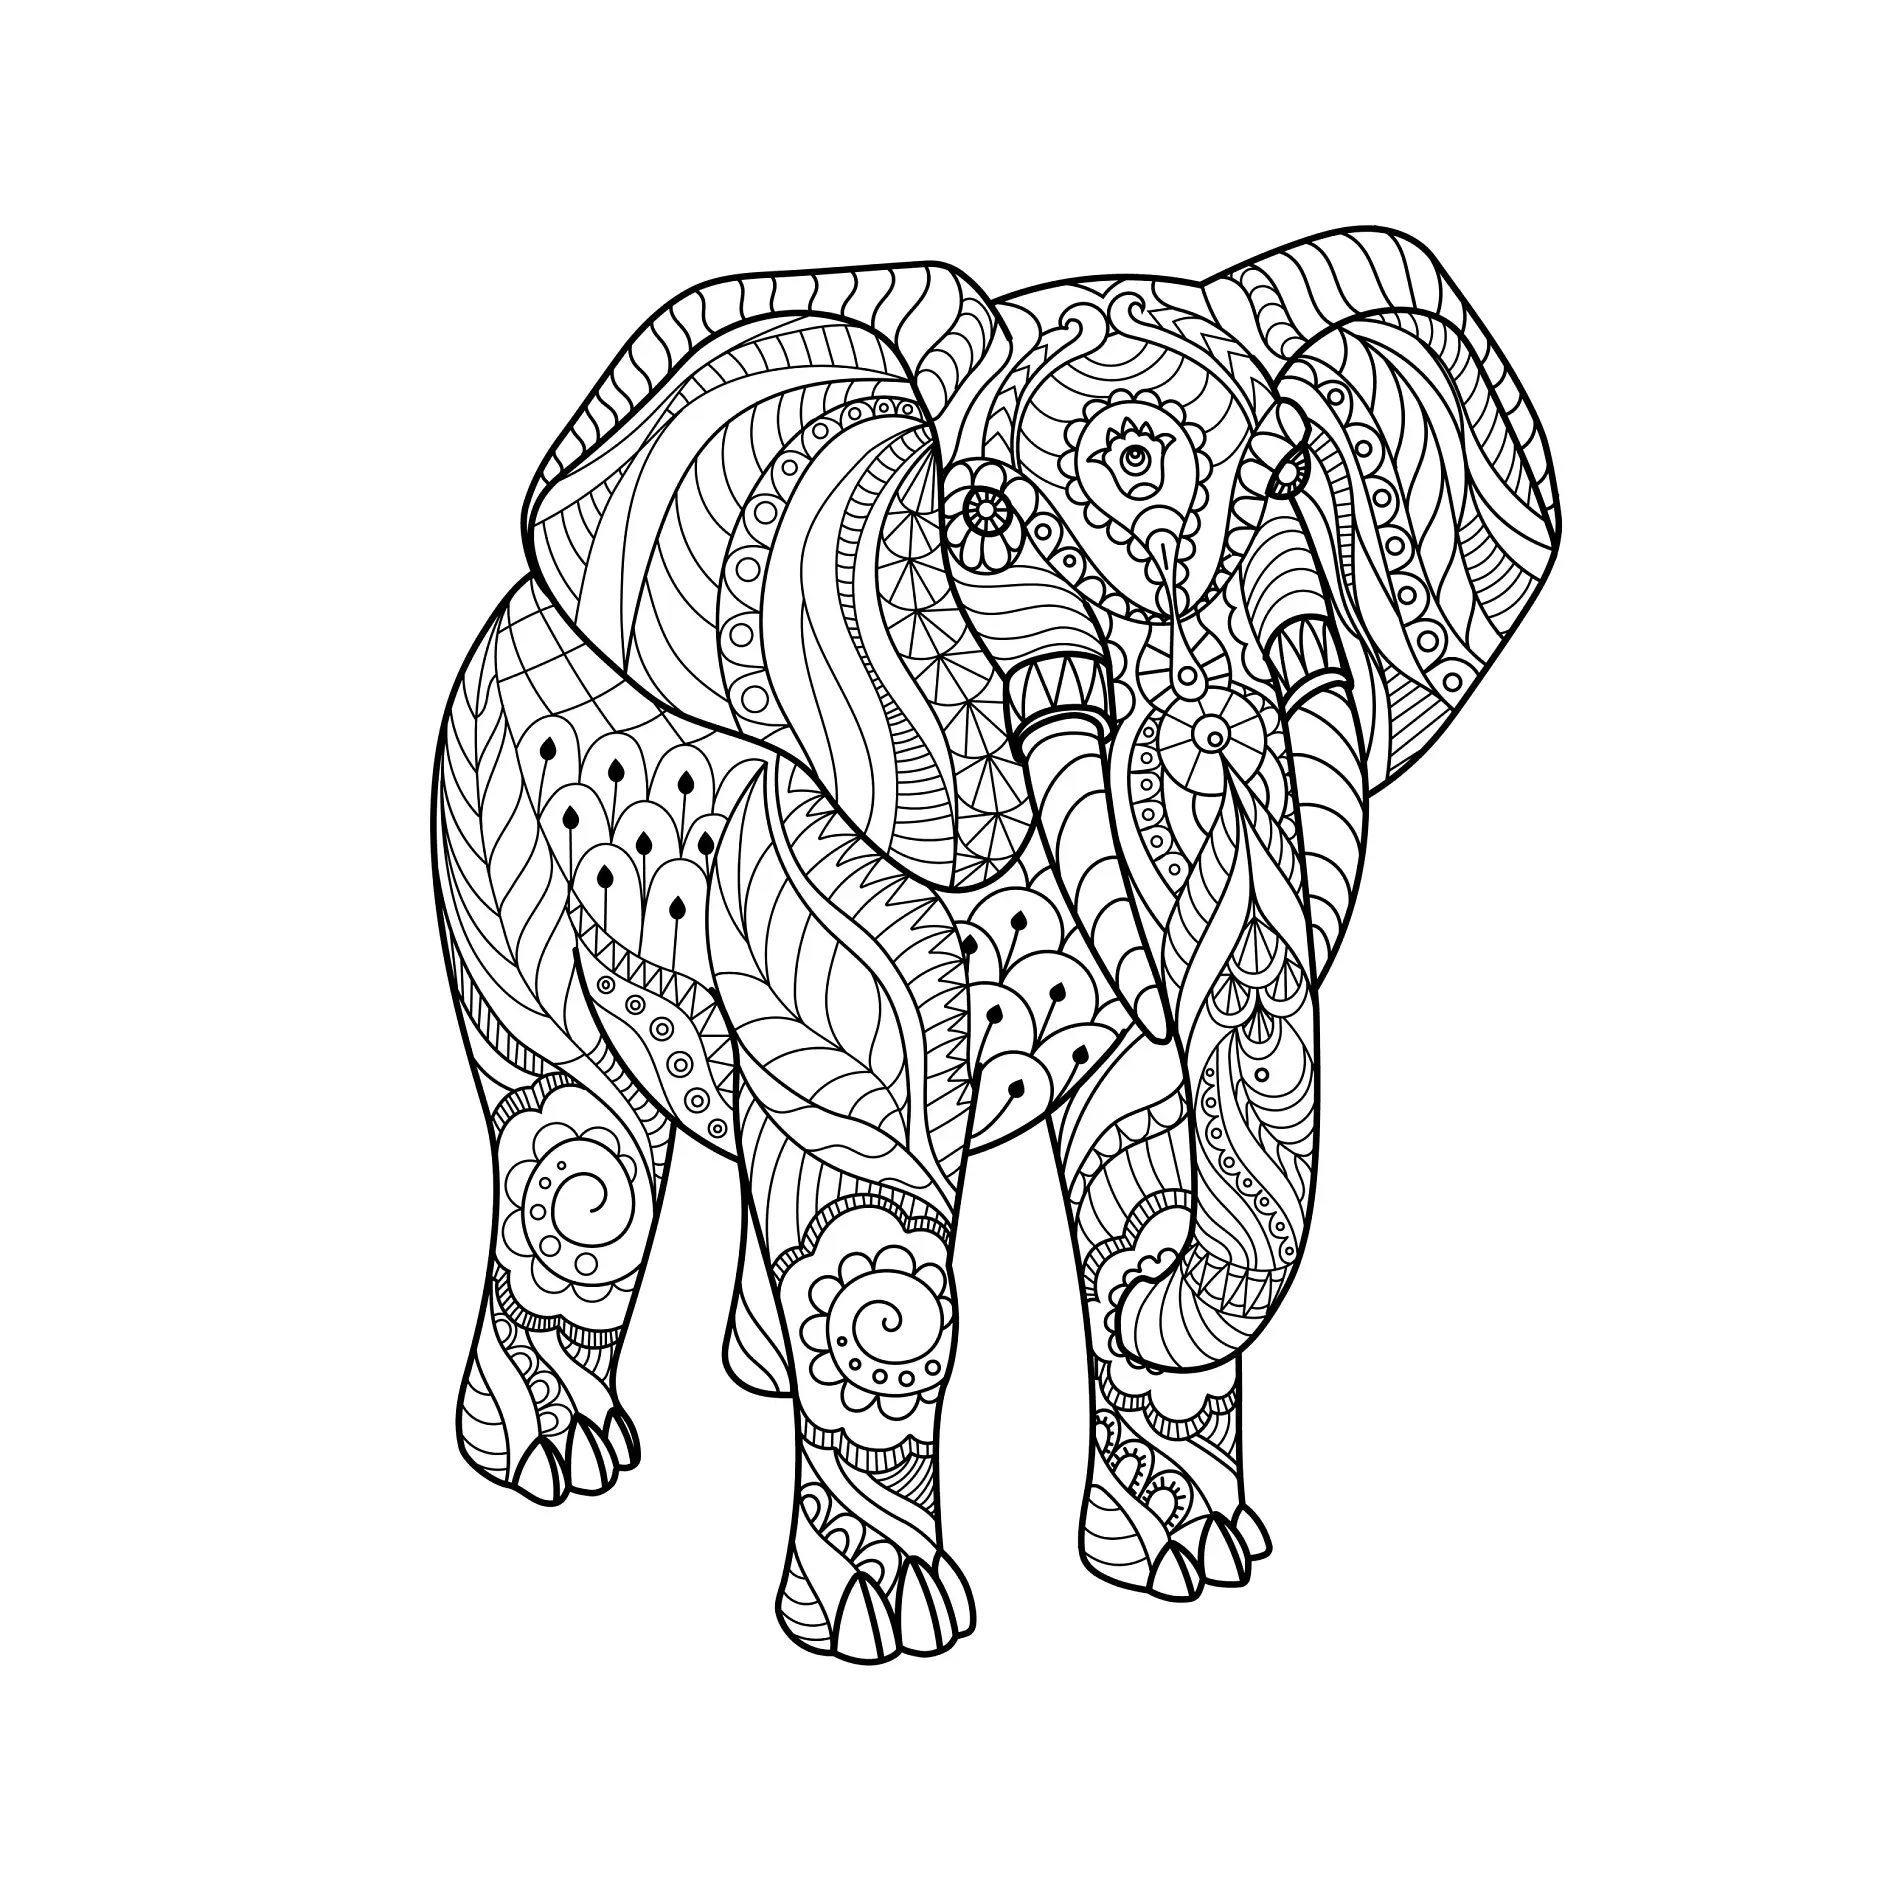 Ausmalbild Mandala Elefant mit komplexen Mustern und Verzierungen